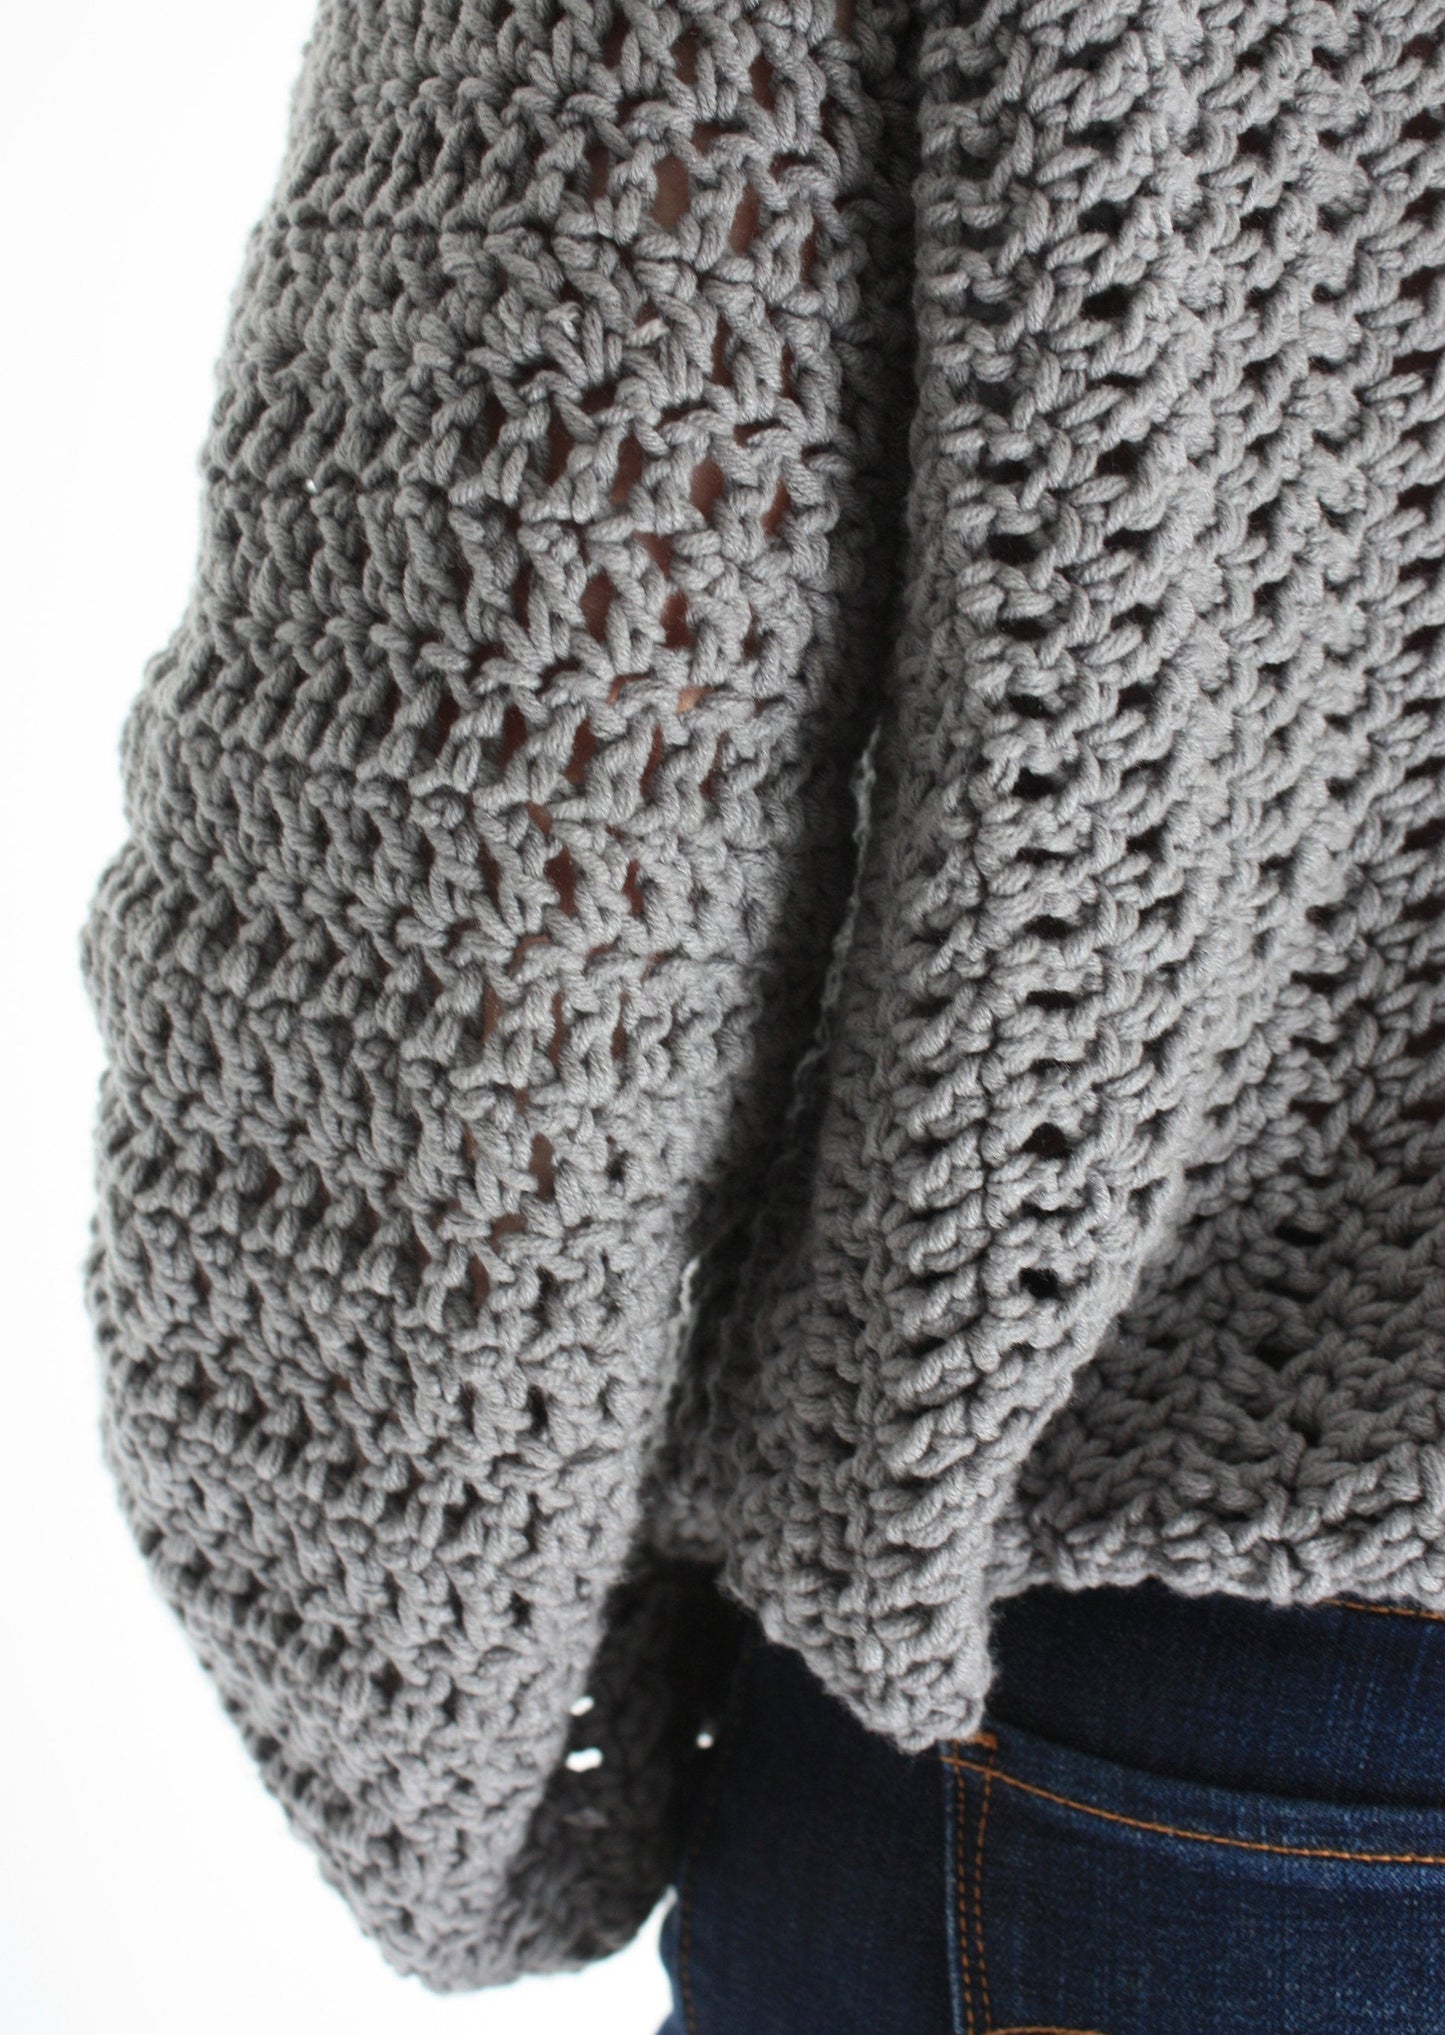 Easy Crochet Pattern - Tulip Time Sweater - King & Eye